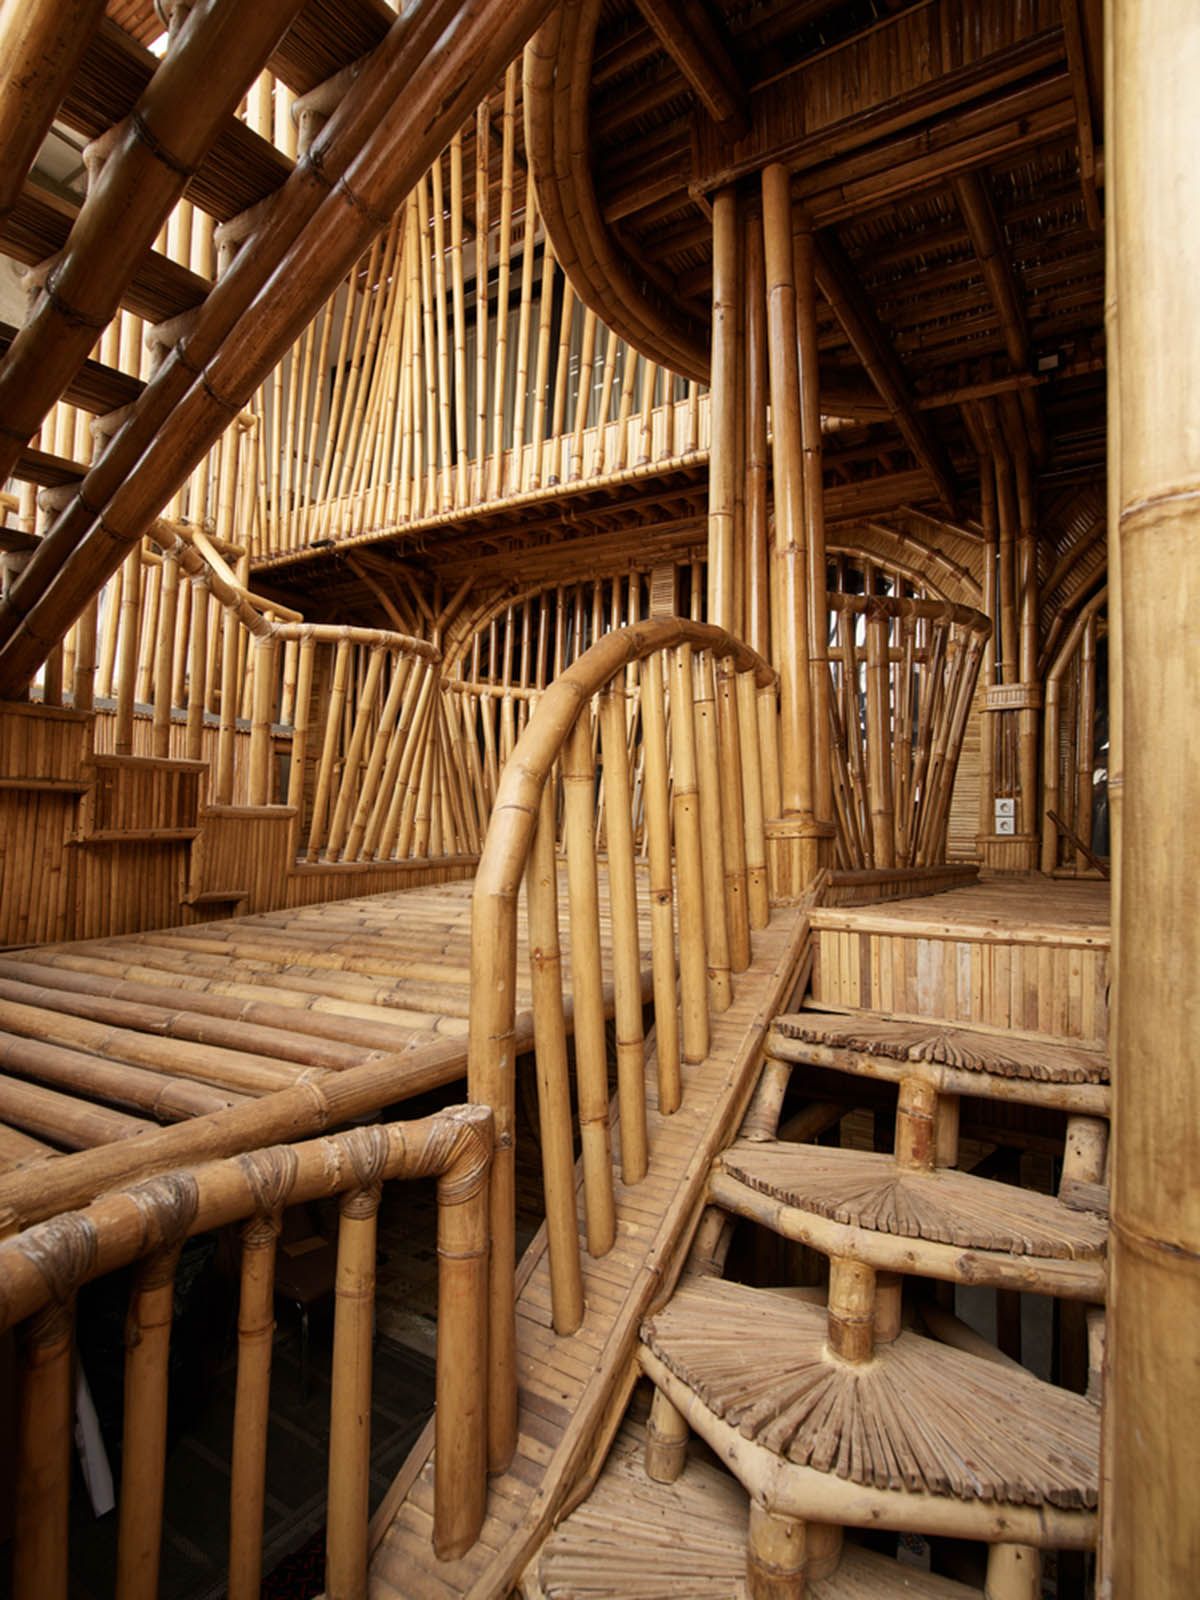 Guha Khu phuc hop xanh Raw Architecture kienviet 8 1 - Guha- Đưa thiên nhiên vào kiến trúc hiện đại | Raw